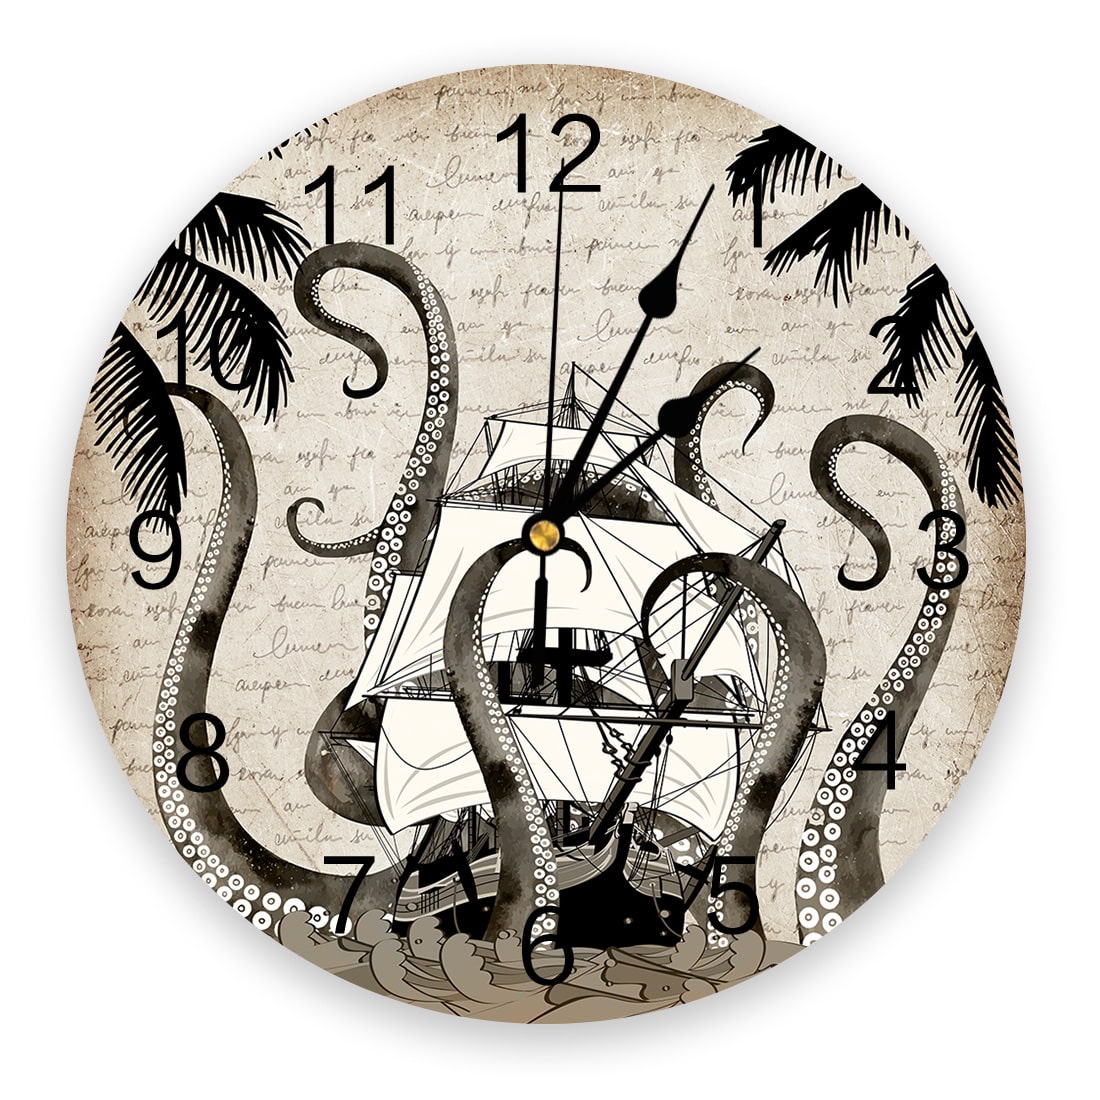 Horloge steampunk murale moderne avec bateau et pieuvre géante dessinés au centre de l'horloge aux tons gris/blanc, avec chiffres pour indiquer l'heure